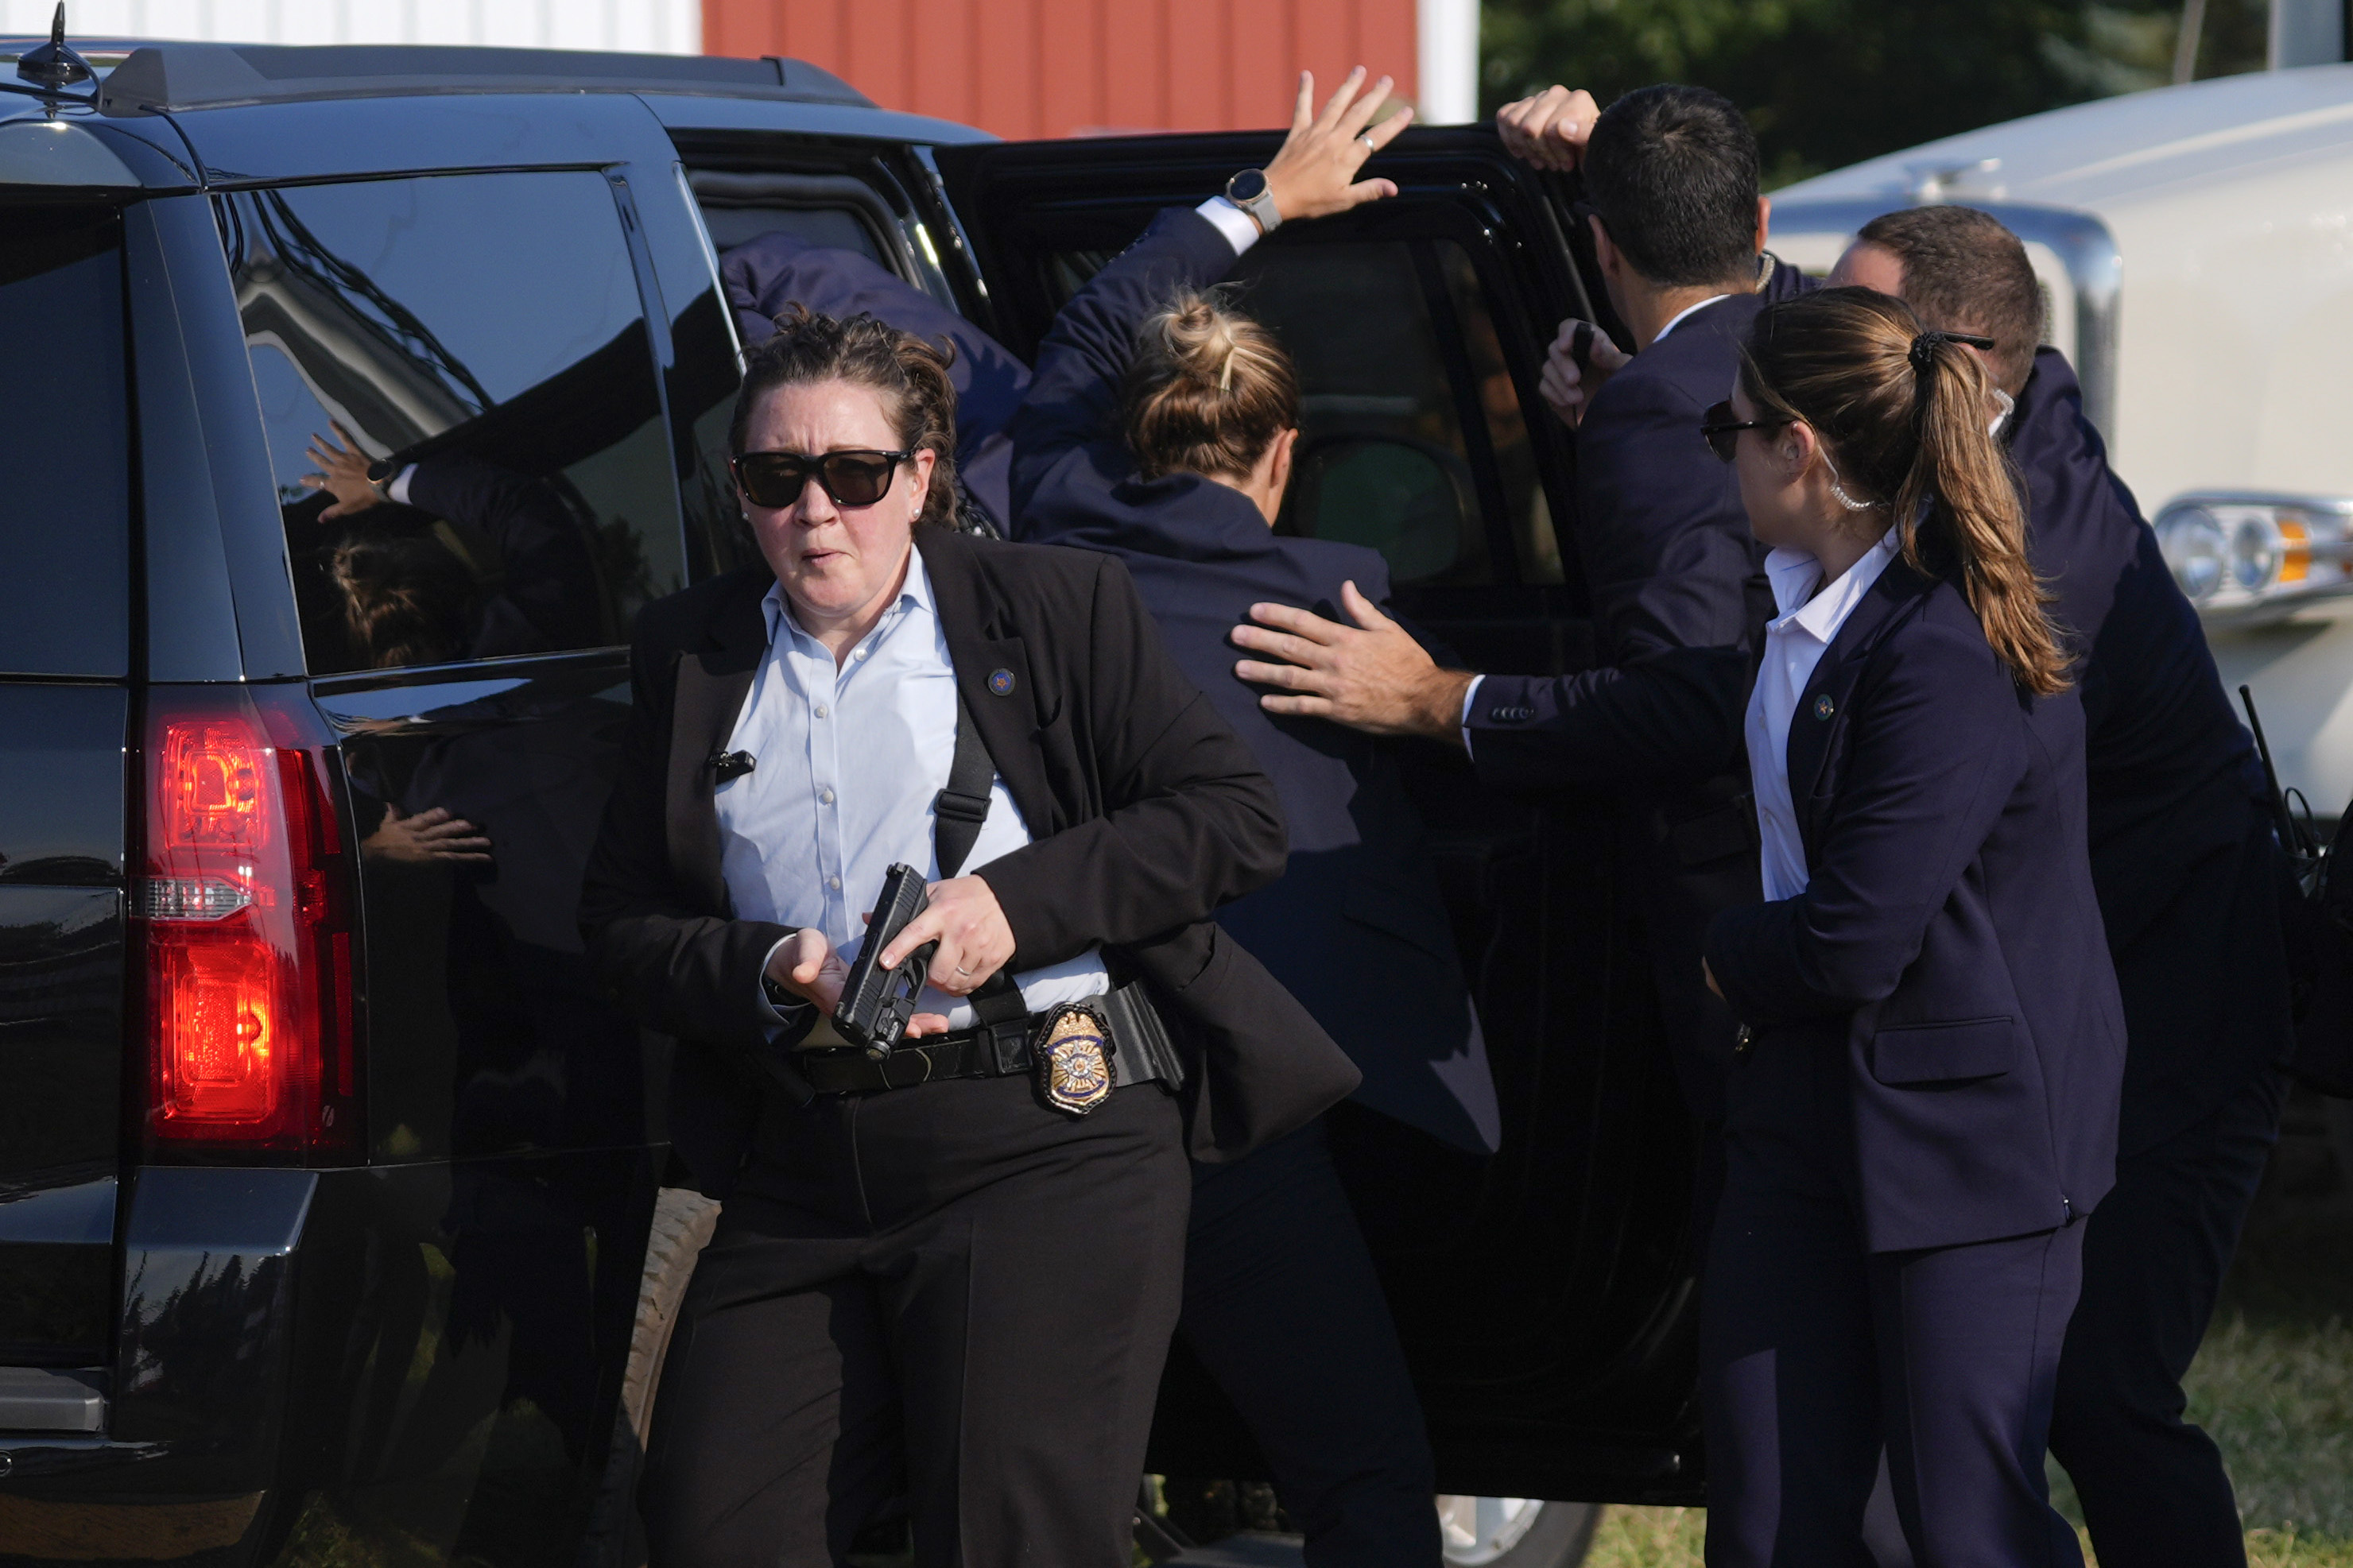 El candidato presidencial republicano, el expresidente Donald Trump, es rodeado por agentes del Servicio Secreto de Estados Unidos mientras lo llevan a un vehículo en un mitin de campaña.